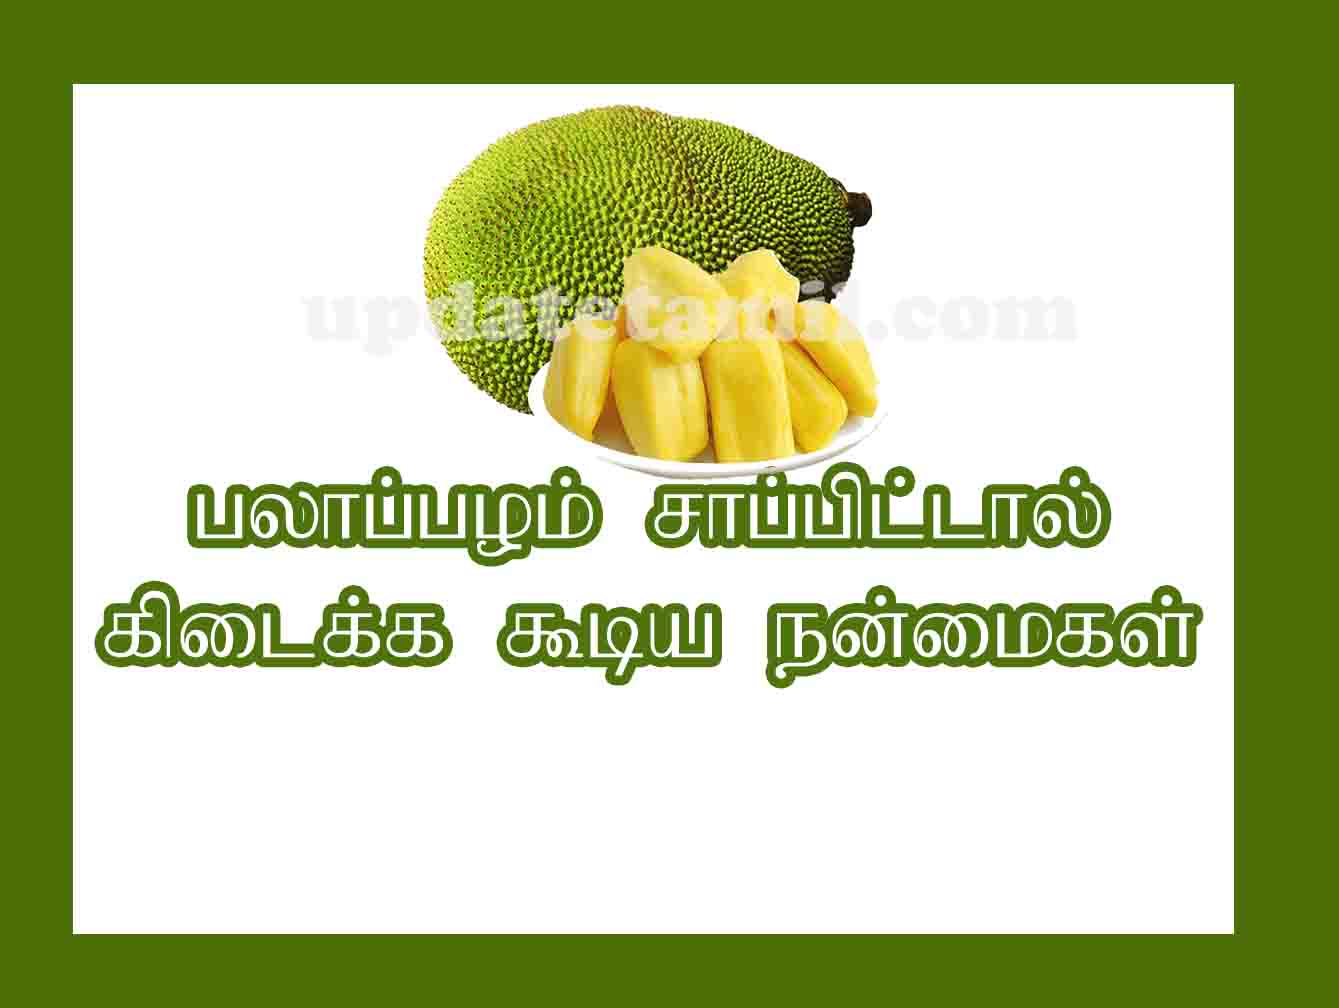 பலாப்பழம் நன்மைகள் jackfruit benefits in tamil